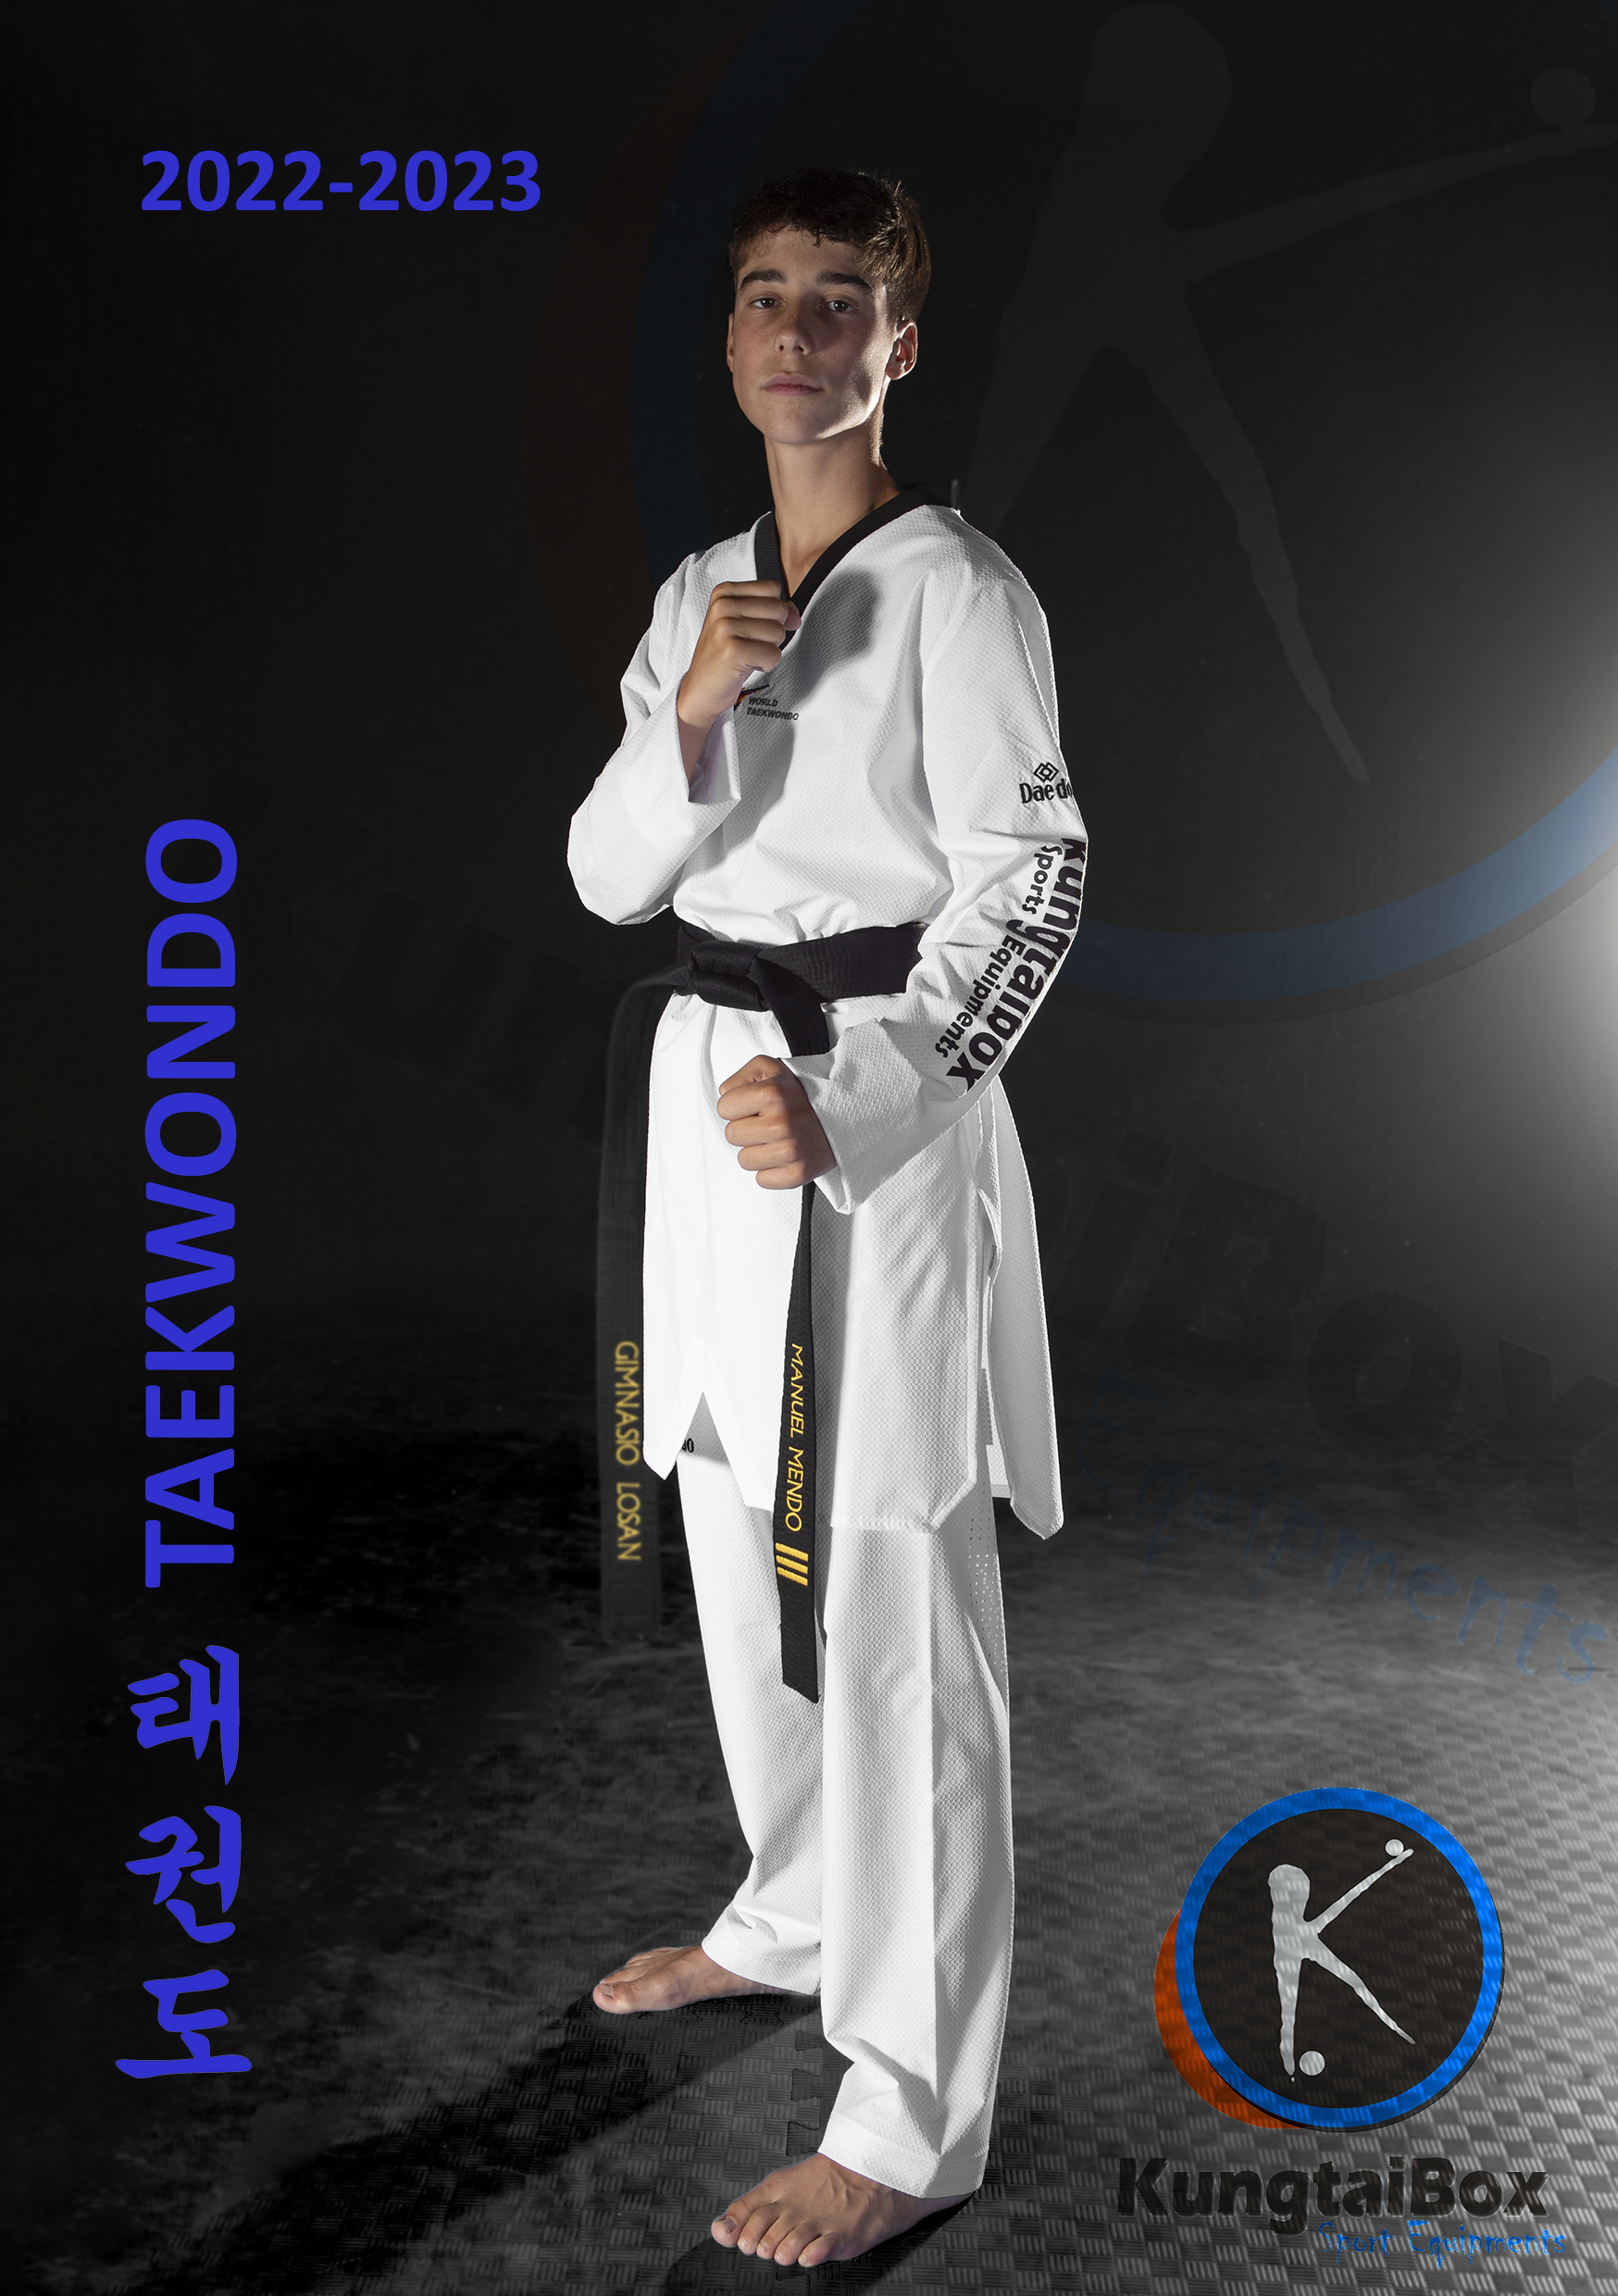 Kungtaibox Taekwondo 2022-2023